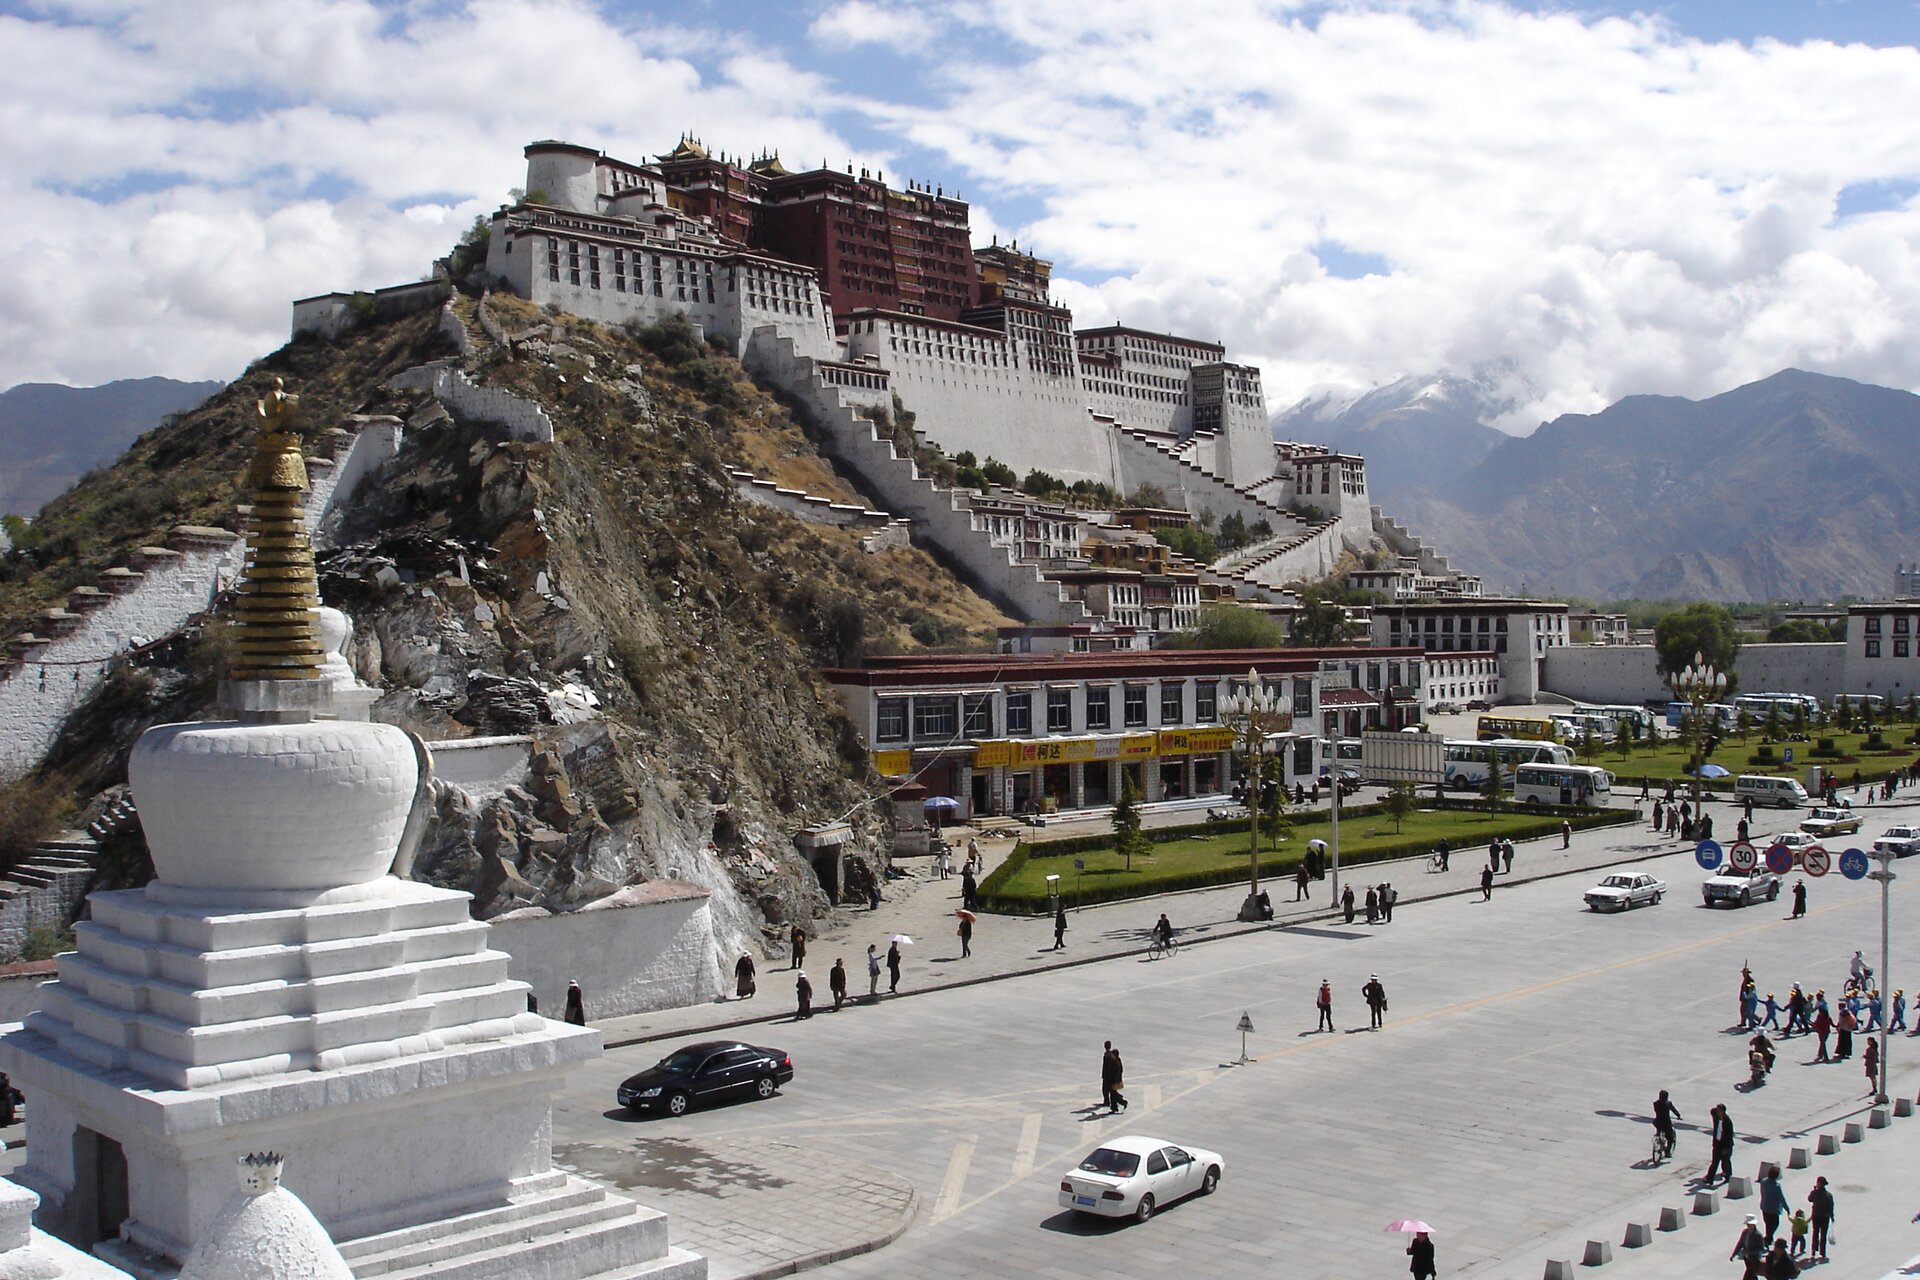 Zdjęcie przedstawia pałac dalajlamy (duchowego przywódcy Tybetańczyków) w Lhasie. Znajduje się on na wzgórzu zaraz przy drodze, jest utrzymany w biało-bordowej kolorystyce. Na placu widoczne są pojedyncze samochody oraz spacerujących ludzi. W oddali widać góry.